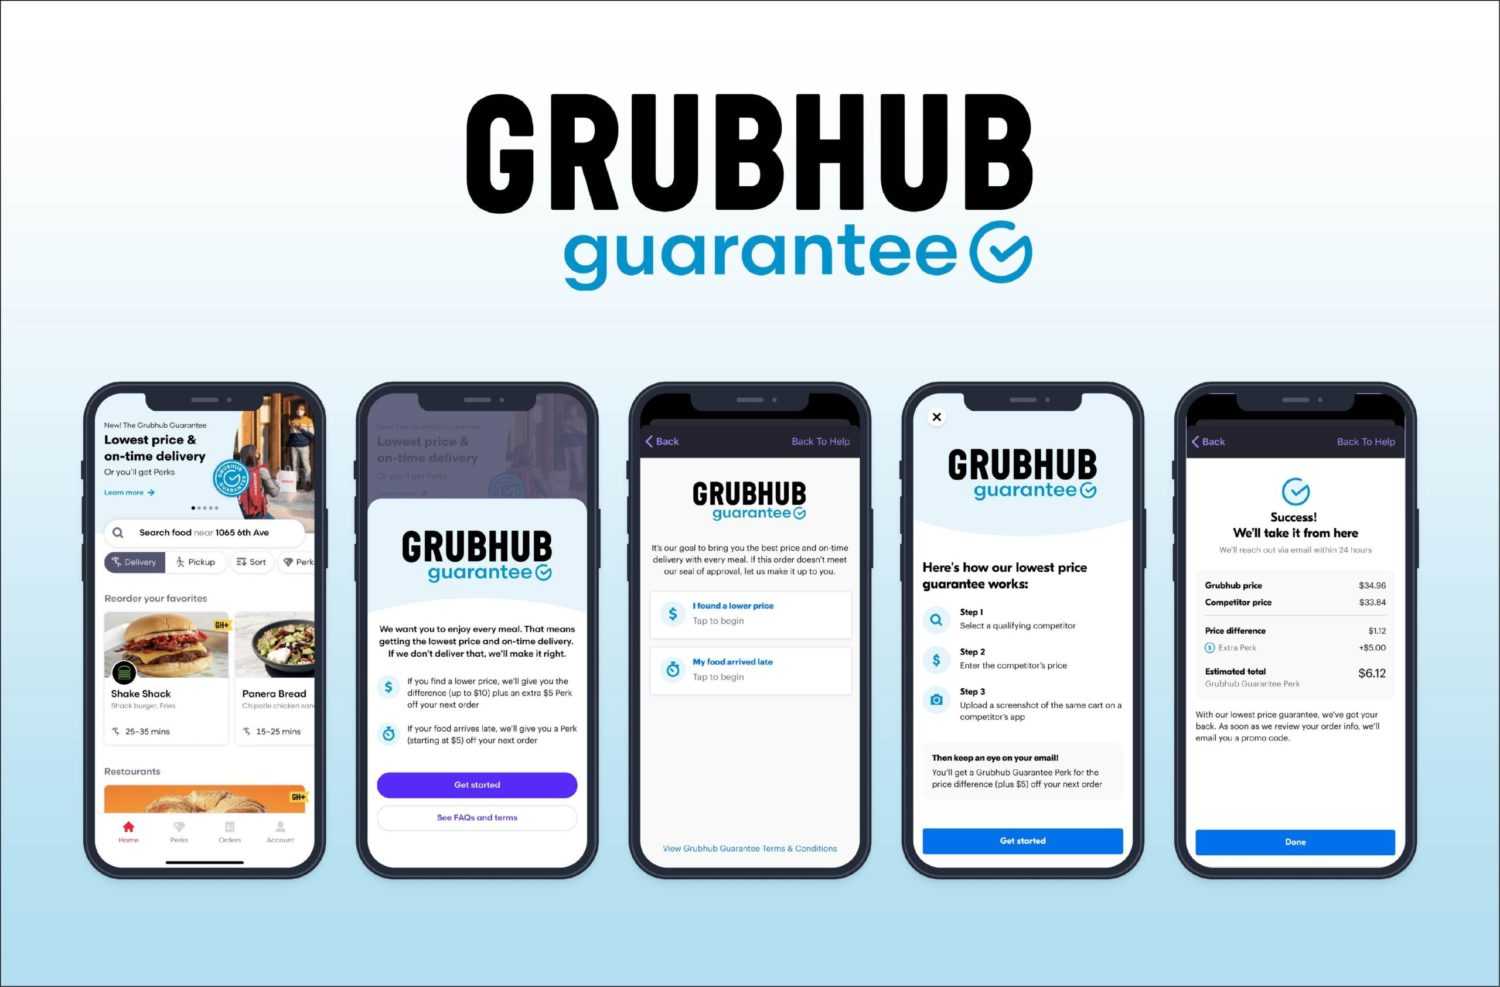 Introducing the Grubhub Guarantee